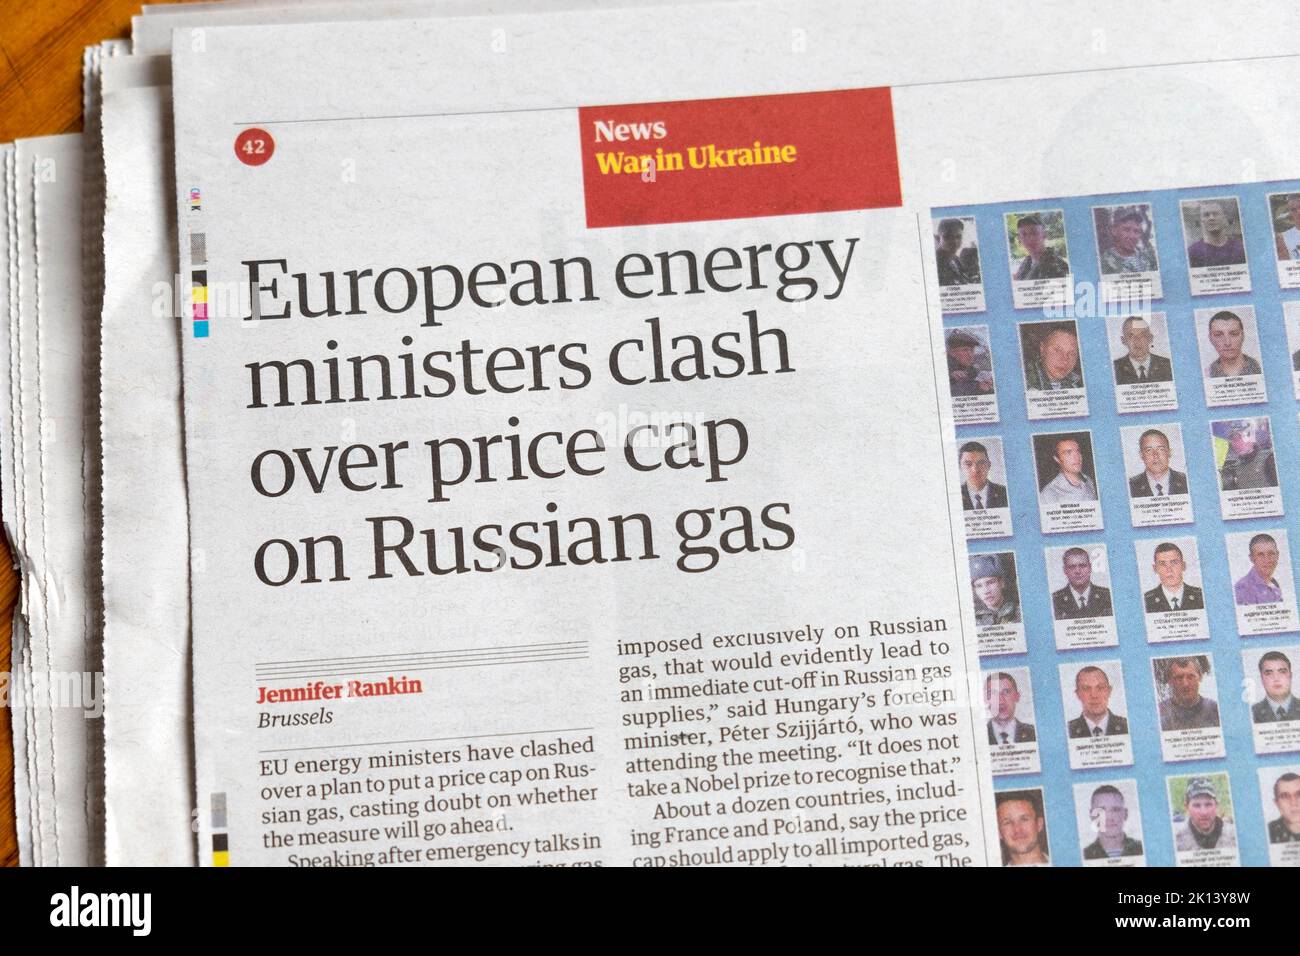 "I ministri europei dell'energia si scontrano sul tetto dei prezzi del gas russo" Guardian giornale headline Ucraina guerra articolo clipping 10 settembre Londra UK Foto Stock